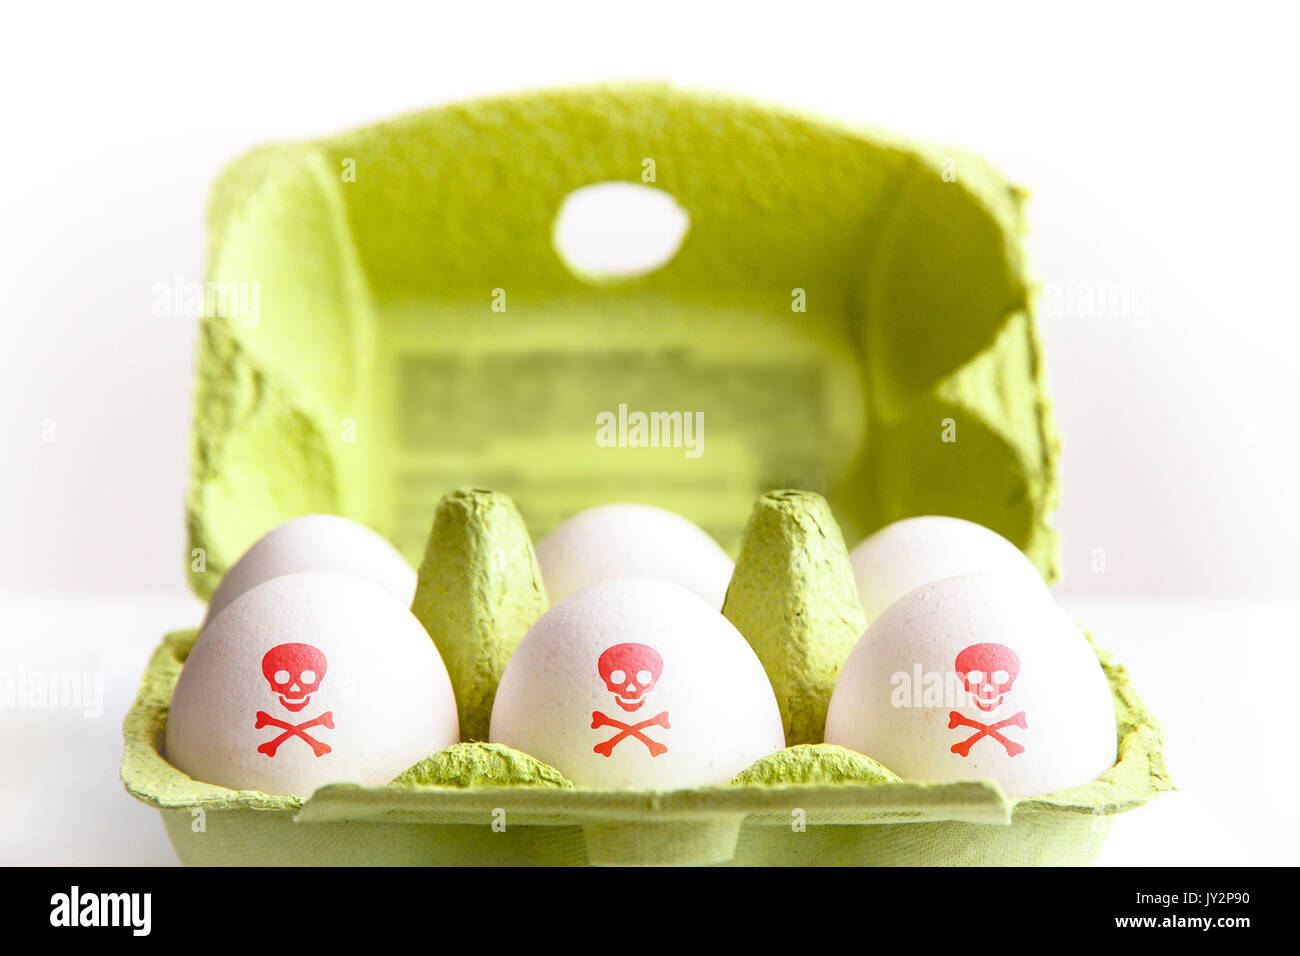 Huevos en un paquete de papel verde con los huevos pintados de color rojo con un símbolo de riesgo tóxico de cráneo y huesos. Concepto de contaminación alimentaria huevo escándalo. Foto de stock